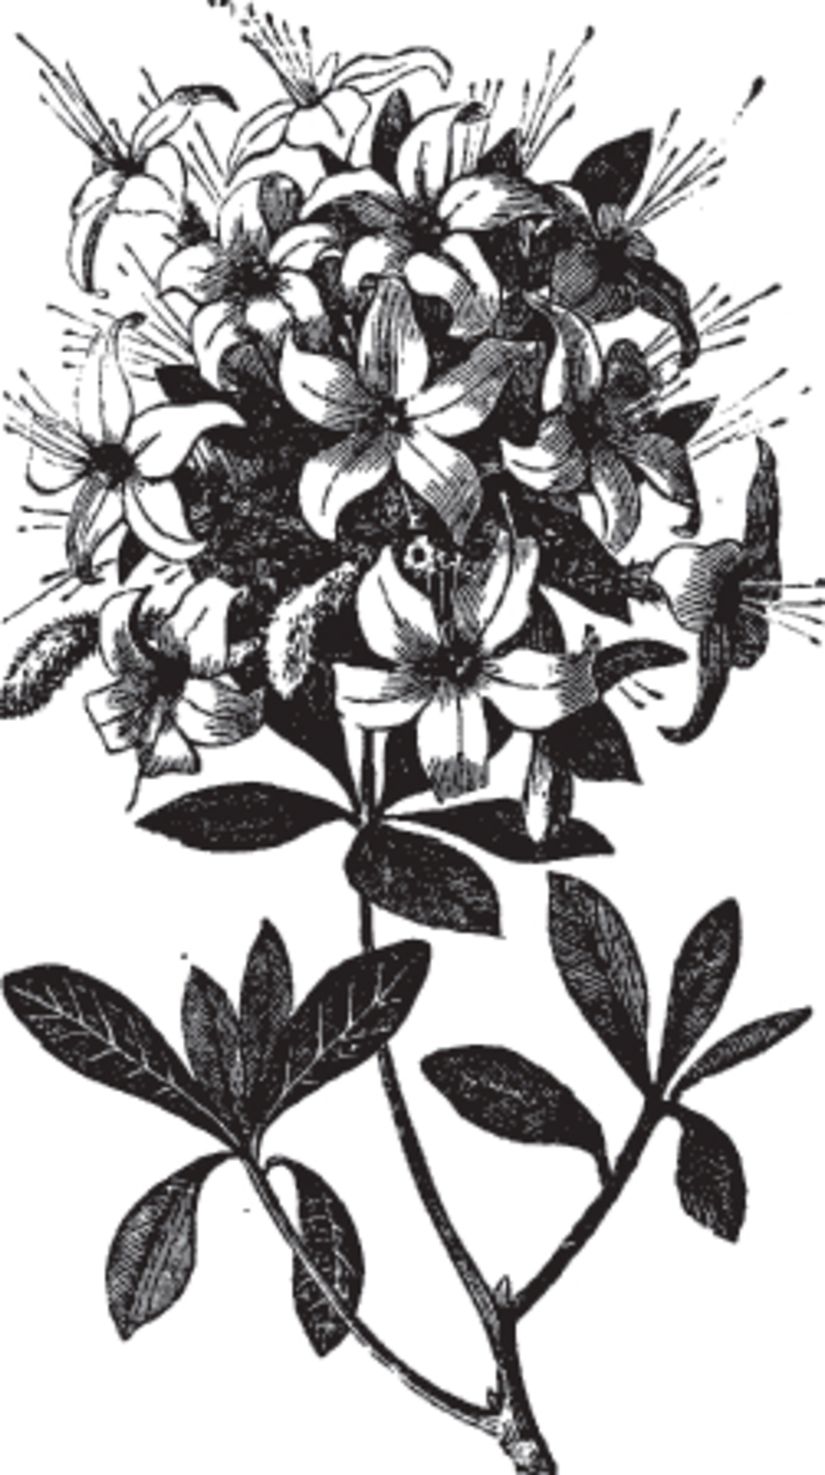 Engraved-Azalea-Illustration-Wallpaper-Mural